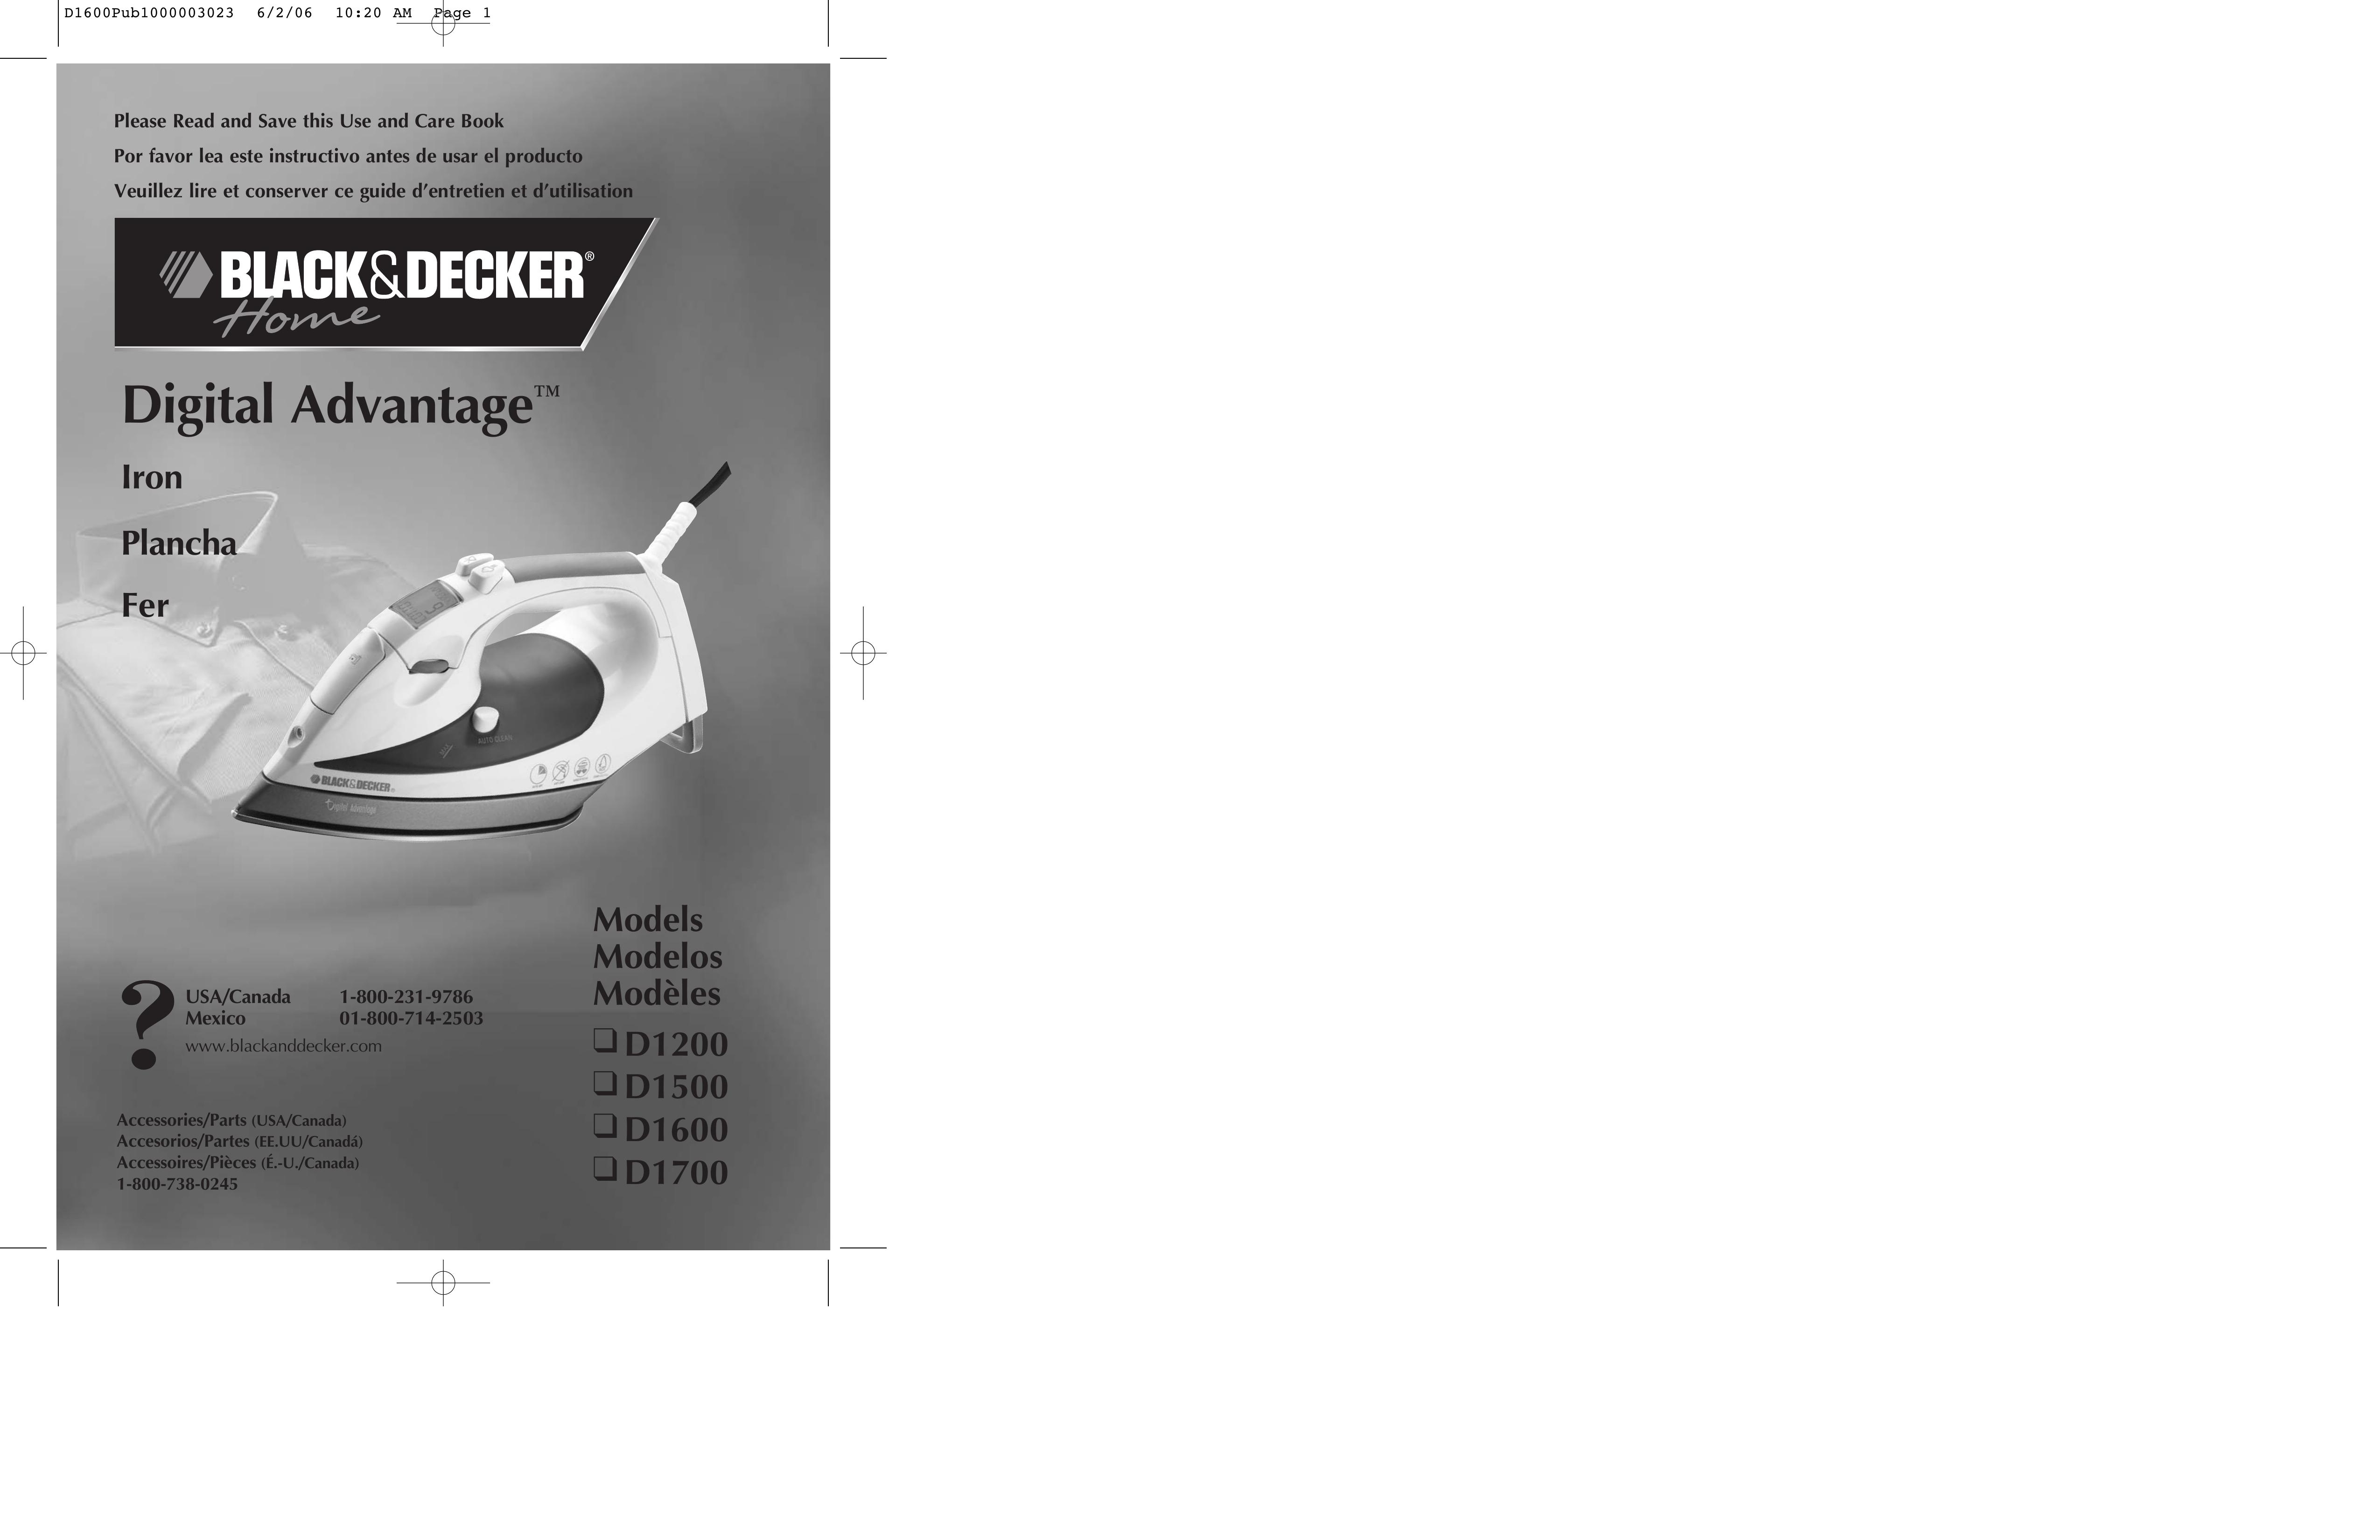 Black & Decker D1700 Iron User Manual